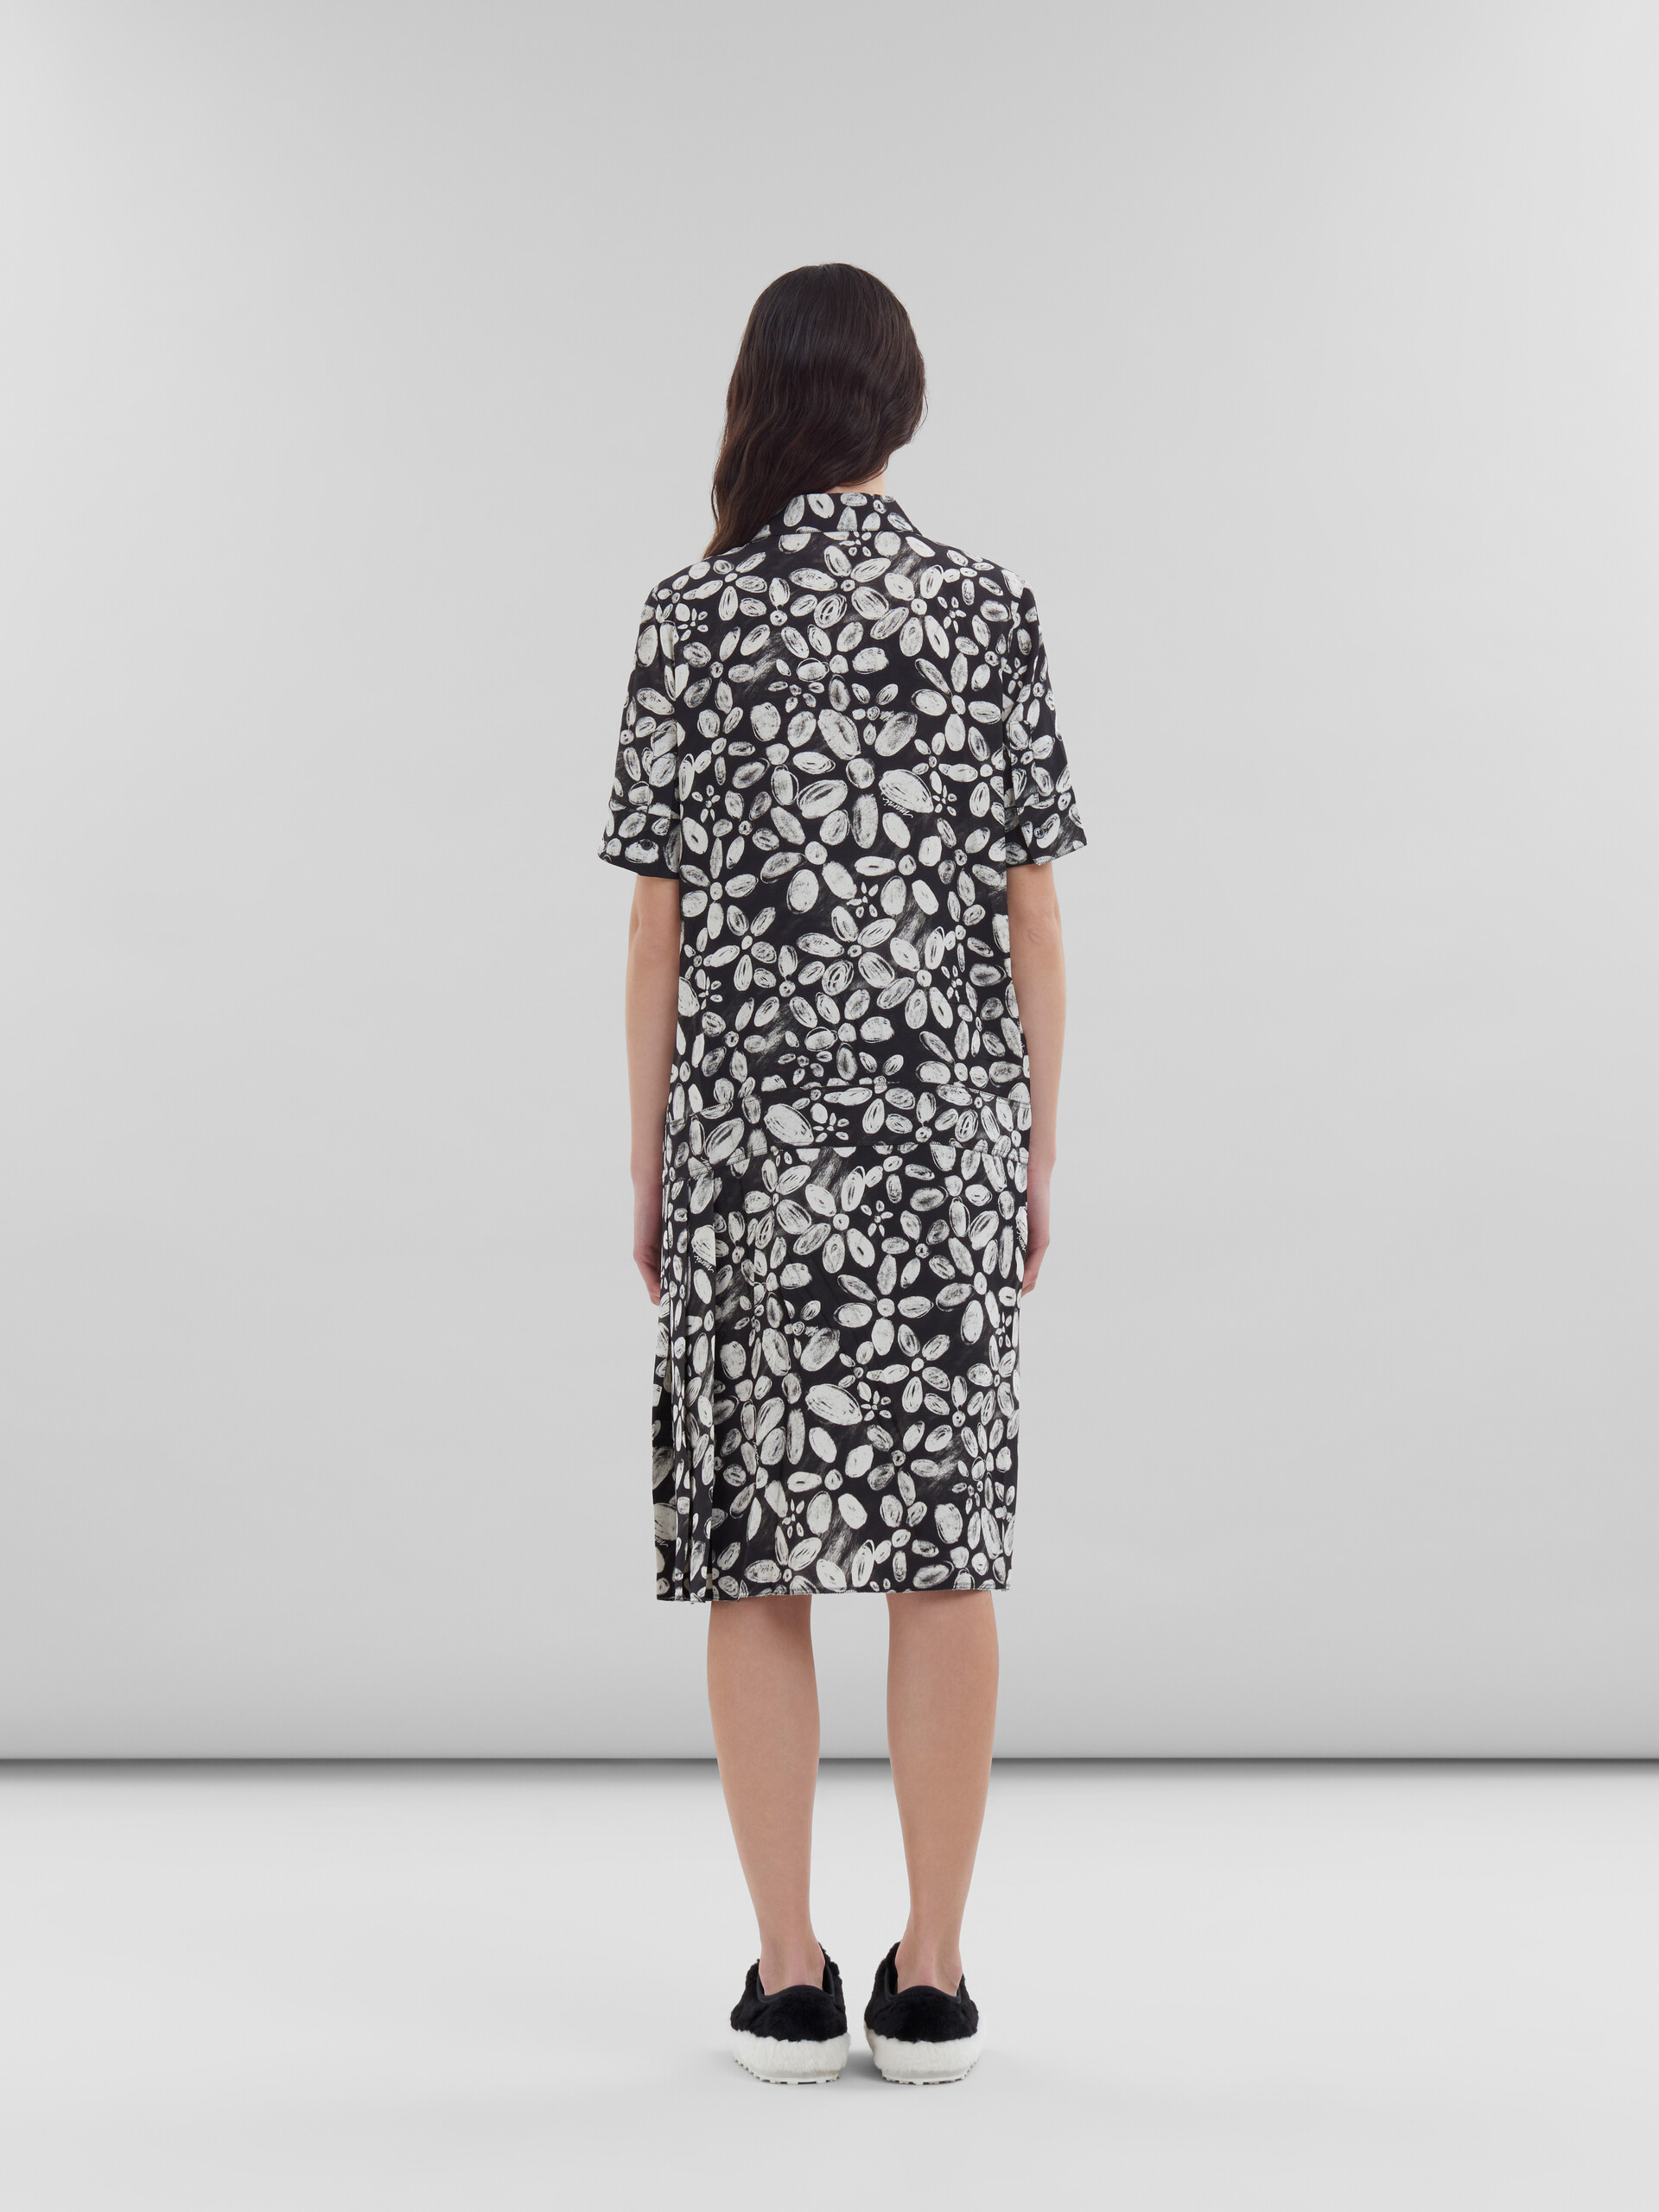 ブラック Bloomingプリント サテンバック クレープ製 ドレス - ドレス - Image 3